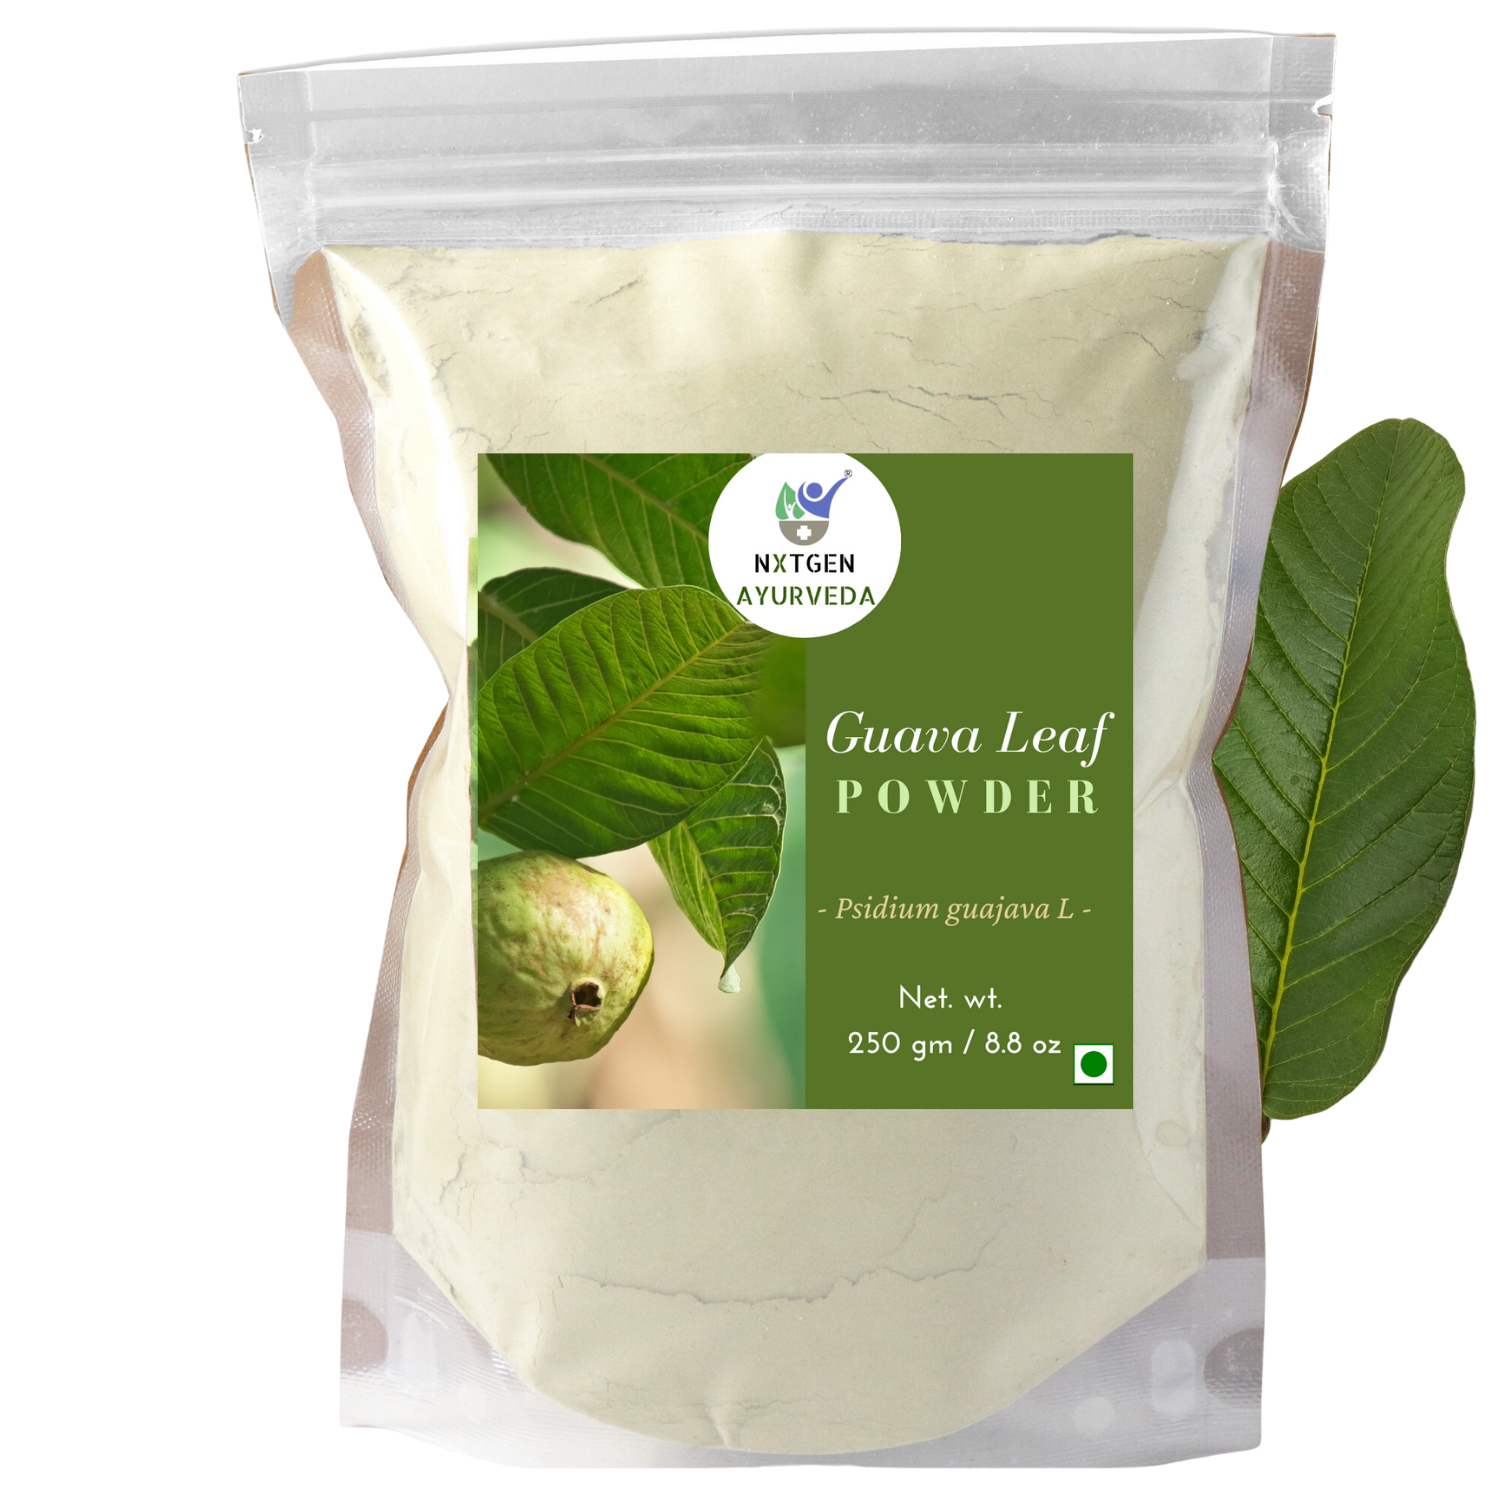 Guava leaf powder